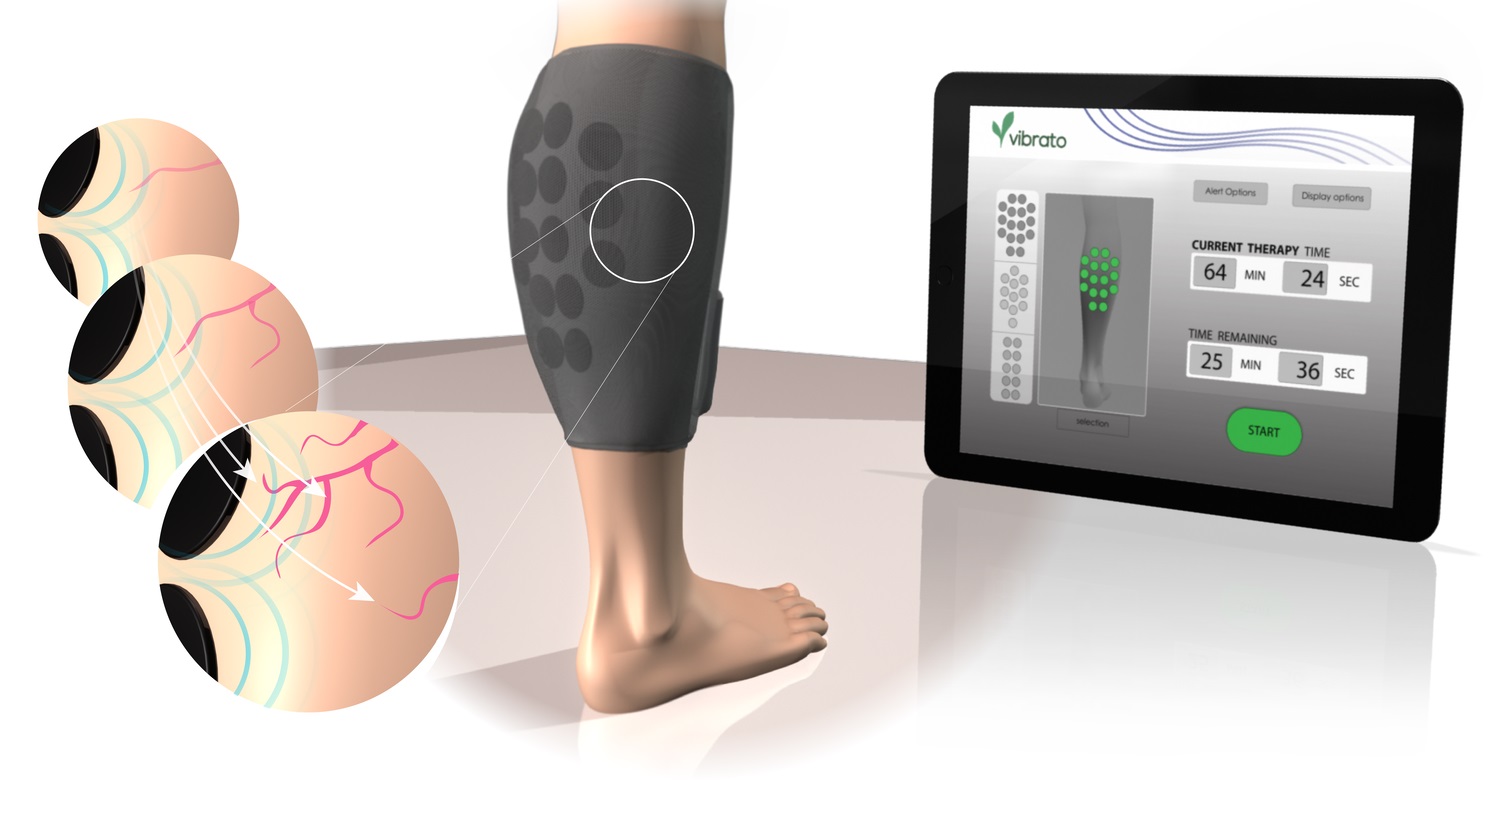 Imagen: La tecnología es el primer ultrasonido terapéutico portátil diseñado para promover la vasodilatación y el crecimiento de los vasos (Fotografía cortesía de Vibrato Medical)